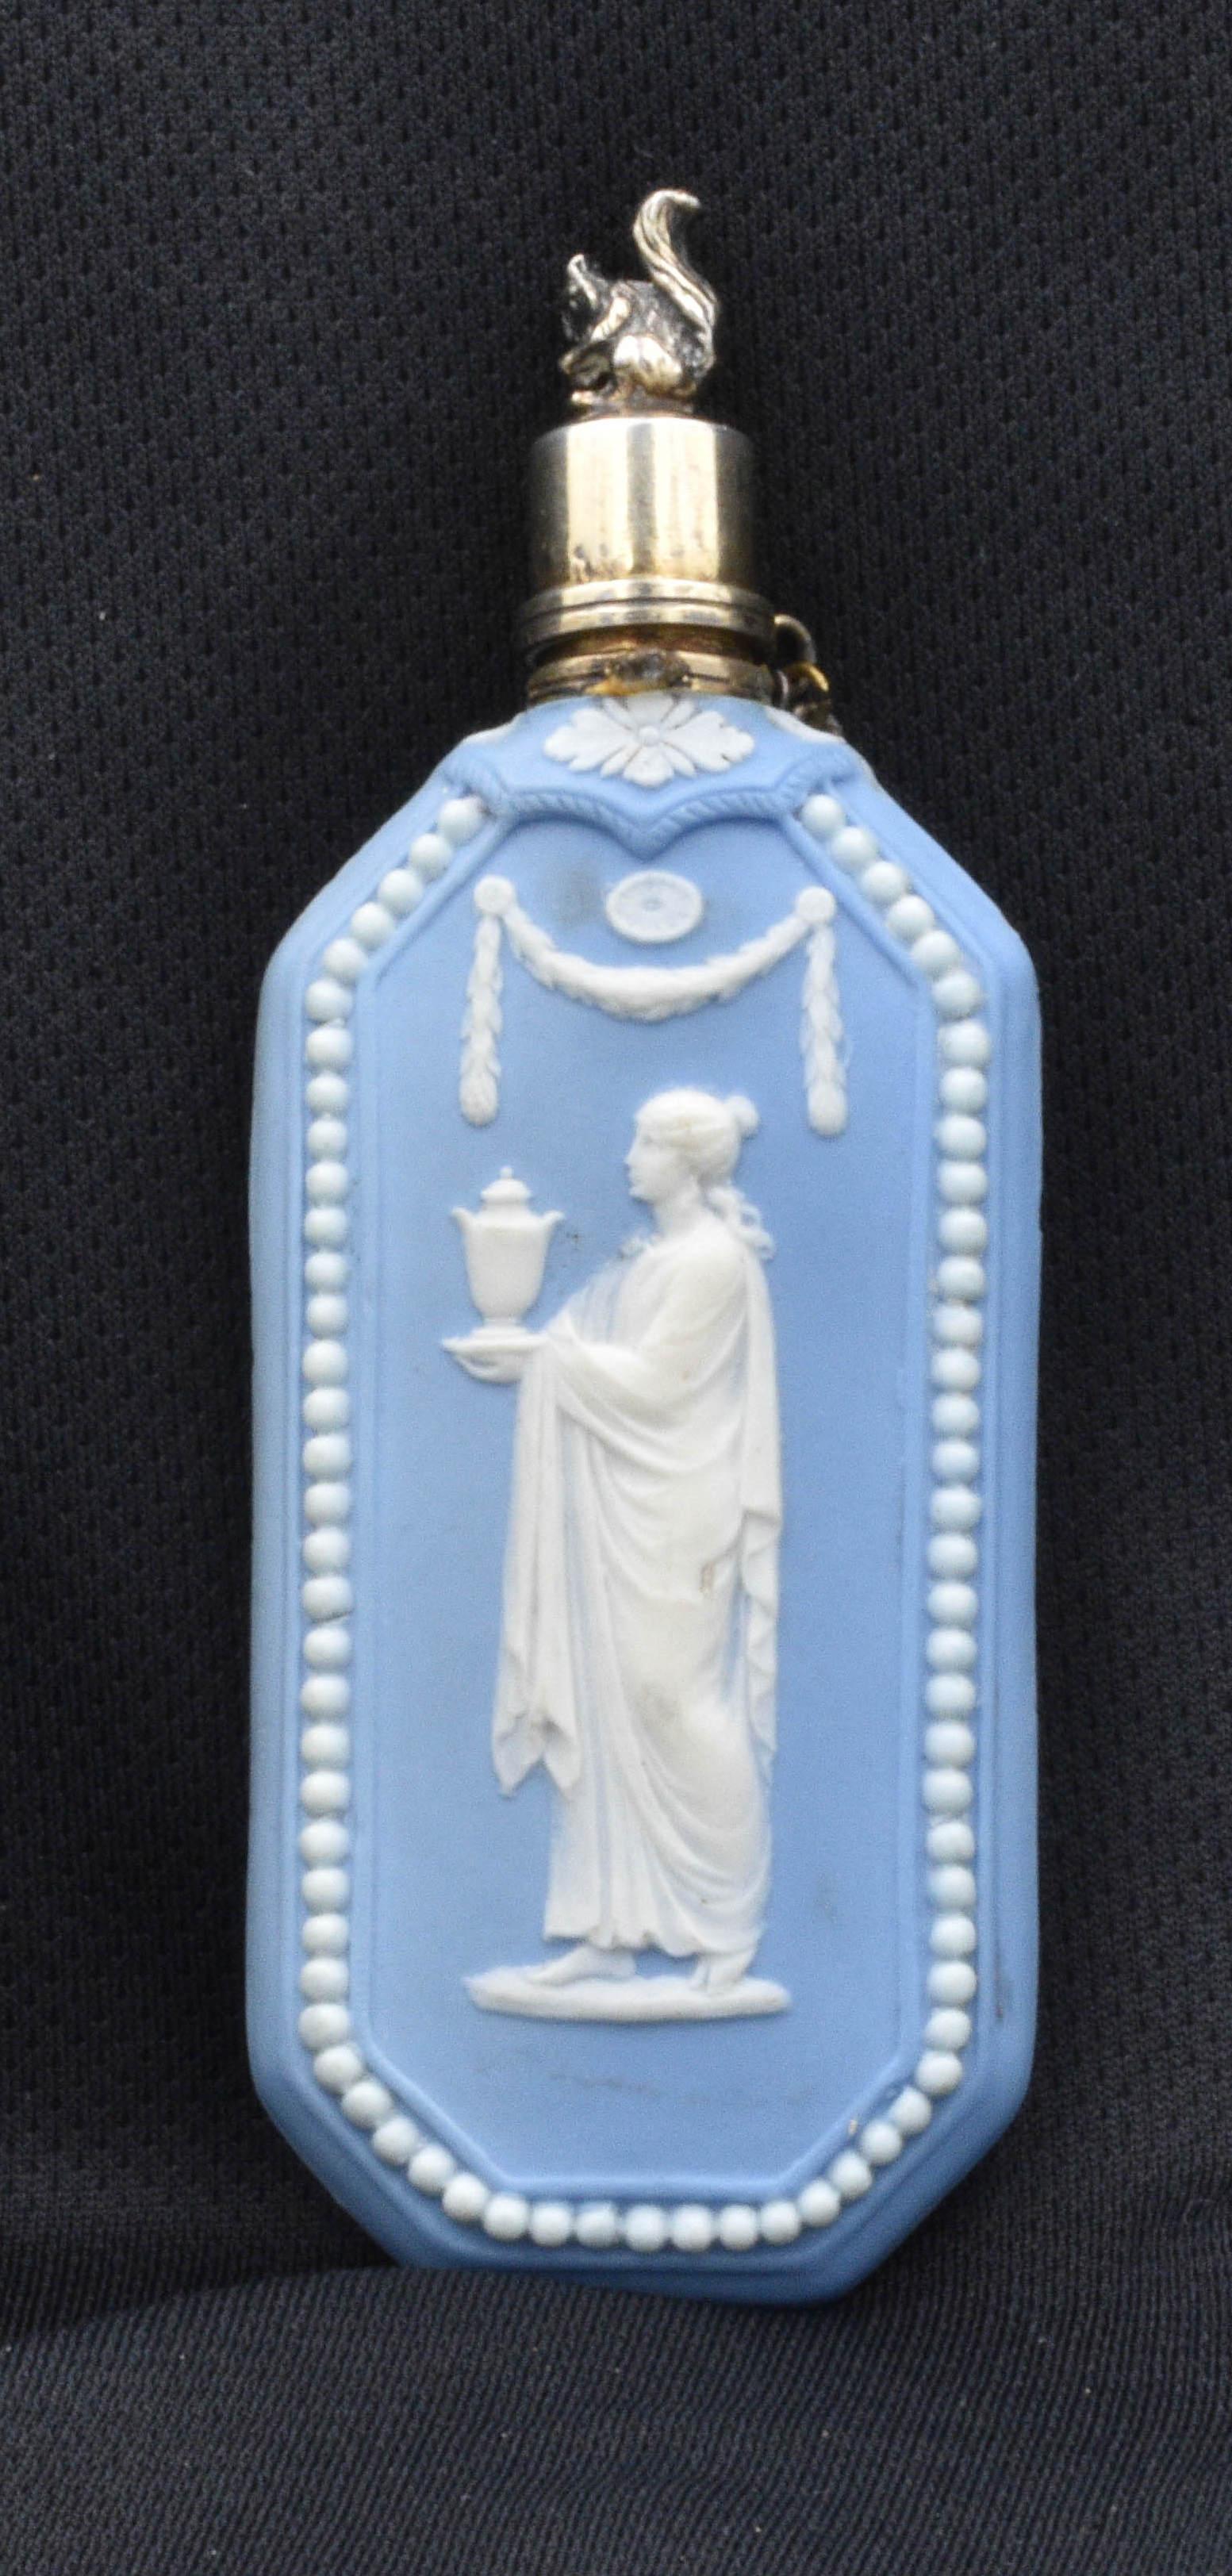 Un flacon de parfum en jaspe bleu pâle, avec bouchon d'origine en argent avec chaîne, surmonté d'un écureuil merveilleusement ouvragé.

Notez la façon dont les perles ont été ajoutées individuellement, ce qui n'a été fait qu'au XVIIIe siècle,